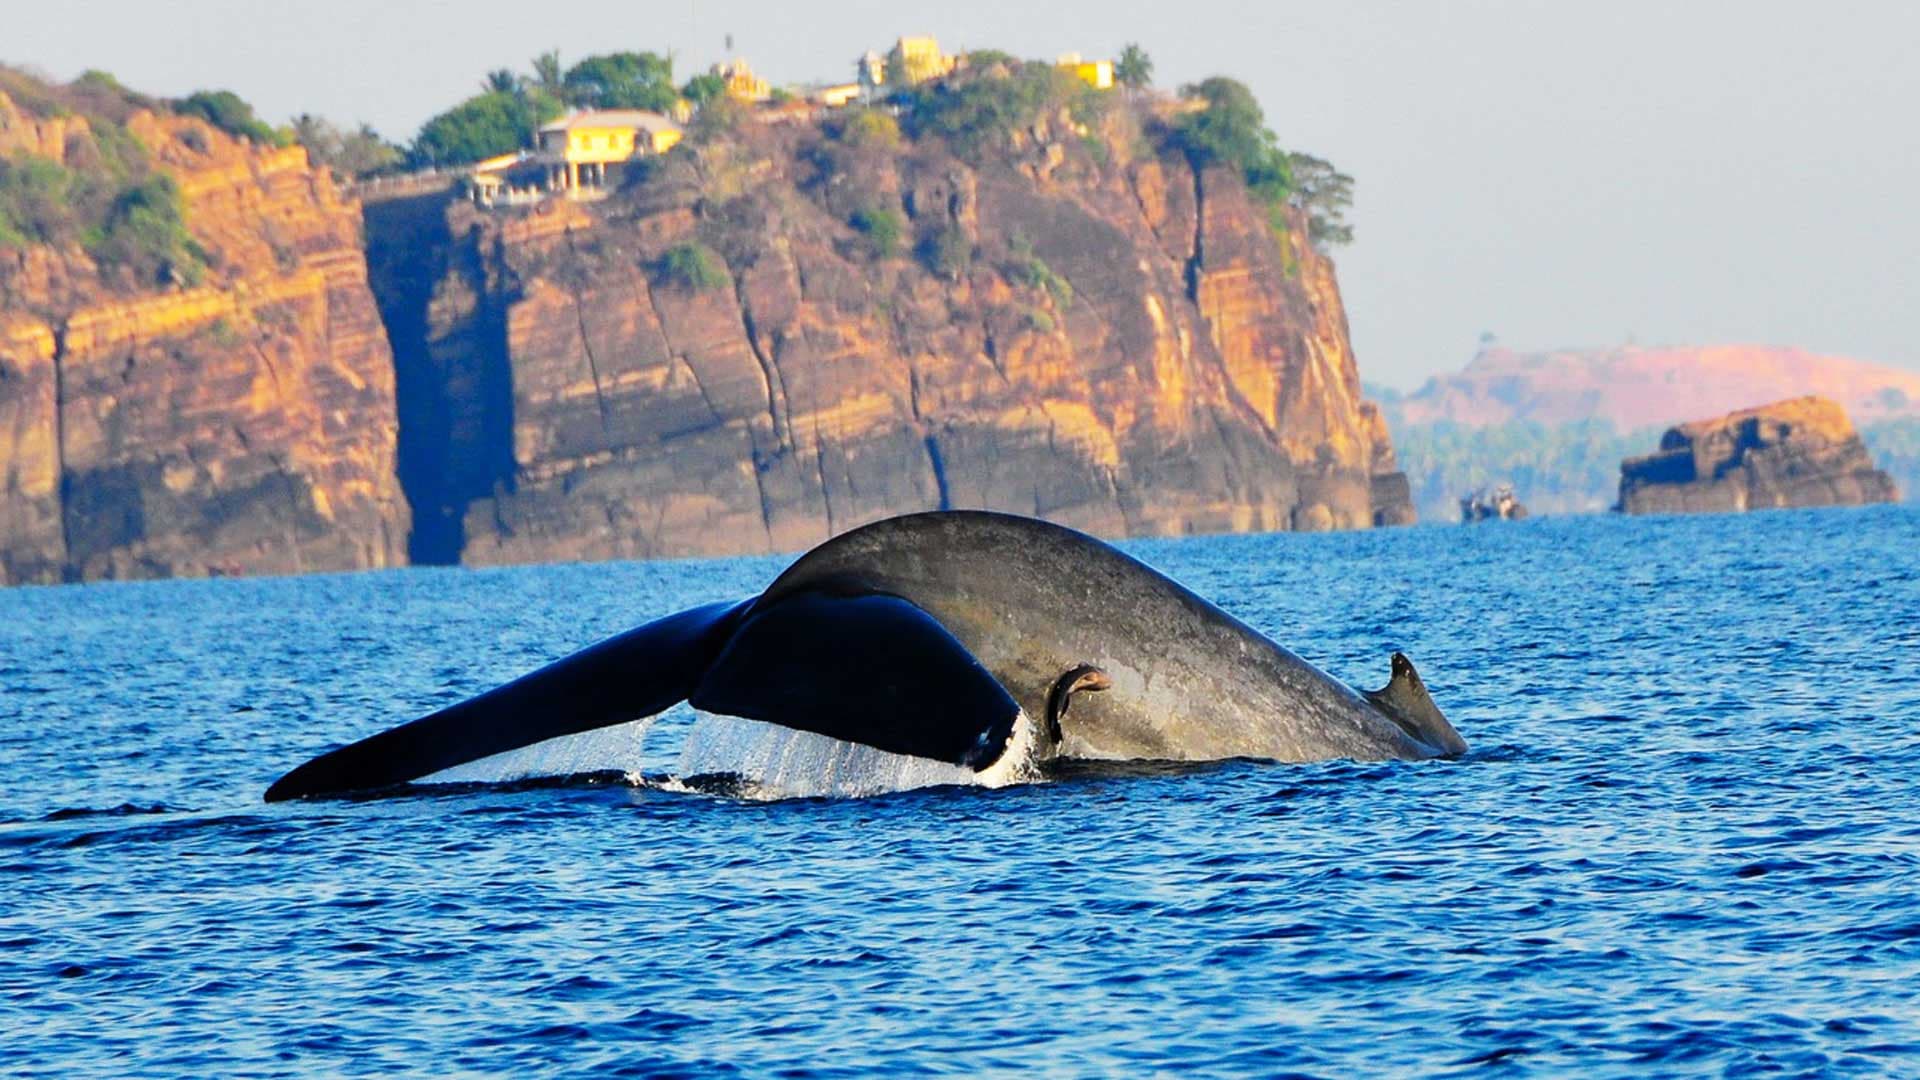 Ein großer Wal schwimmt in der Nähe des Landes in Trincomalee, Sri Lanka